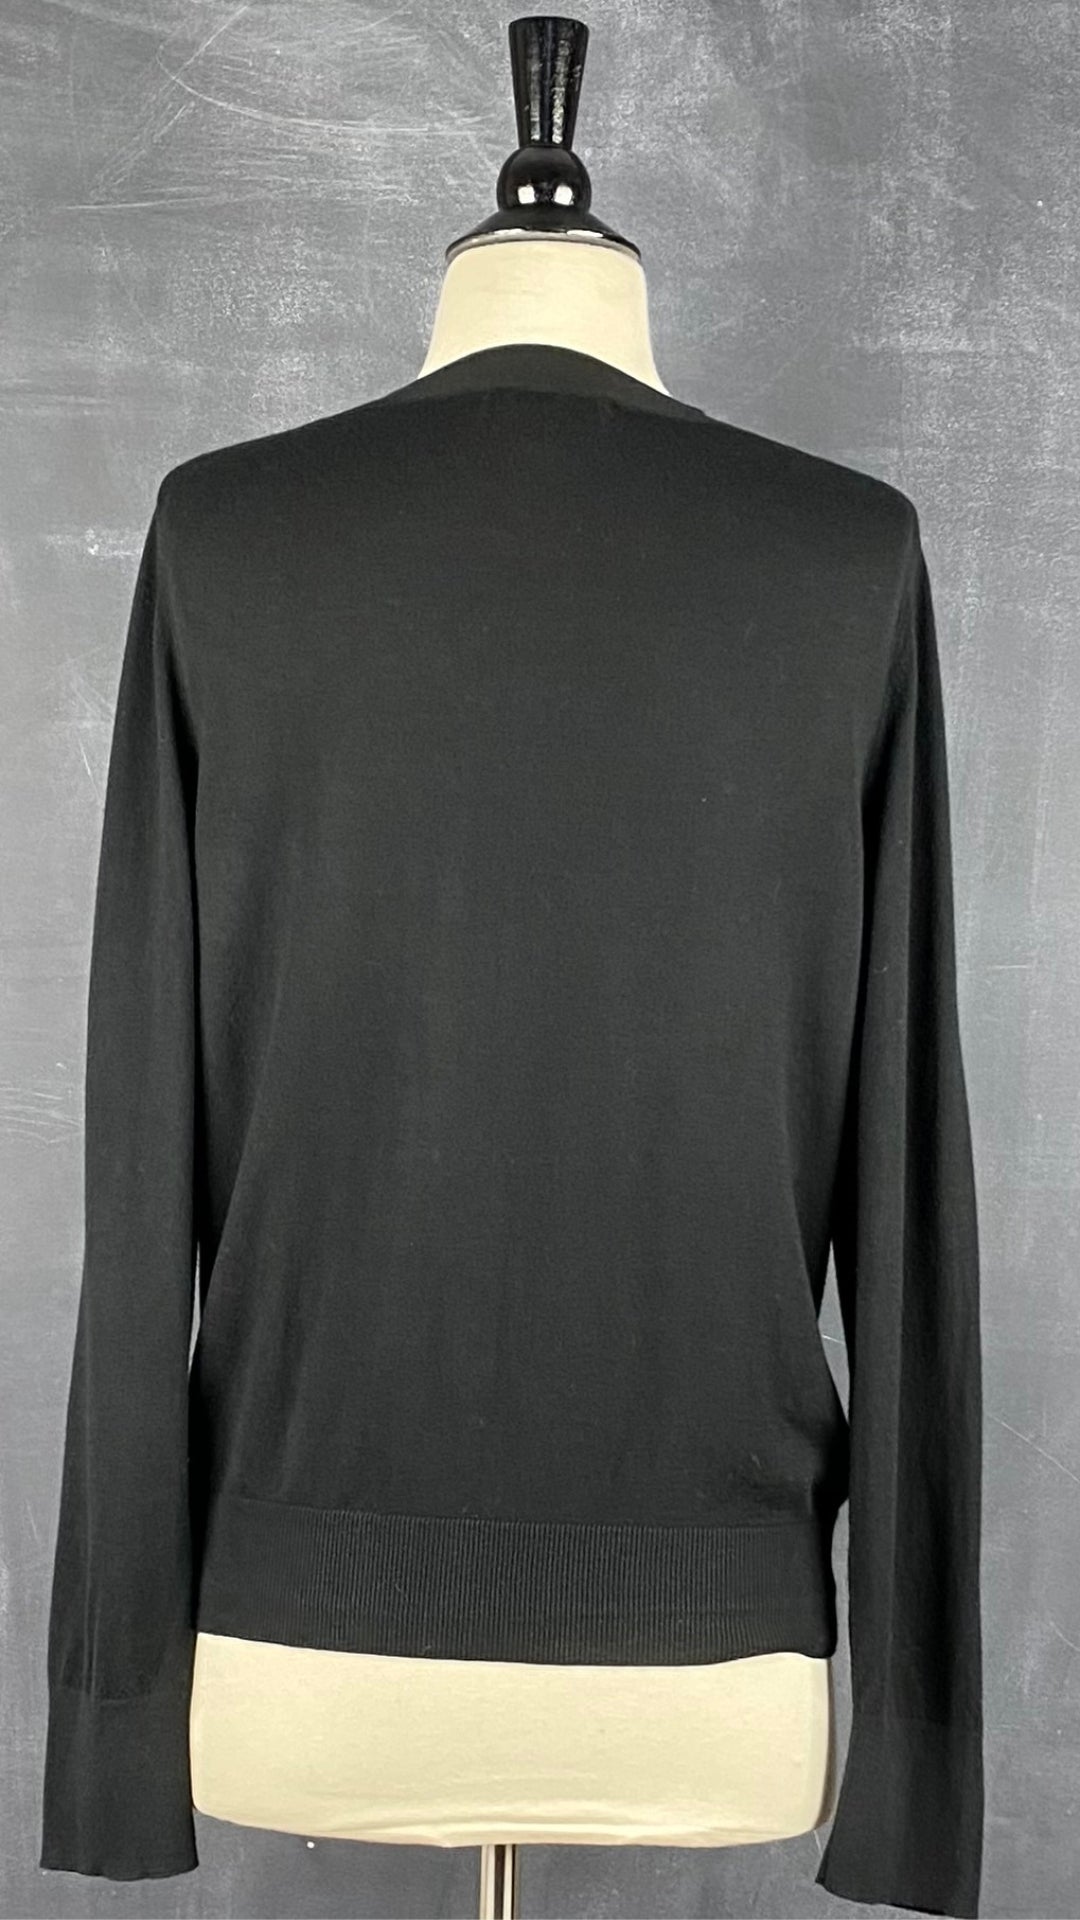 Cardigan boutonné noir en tricot mince à col rond Banana Republic, taille large. Vue de dos.